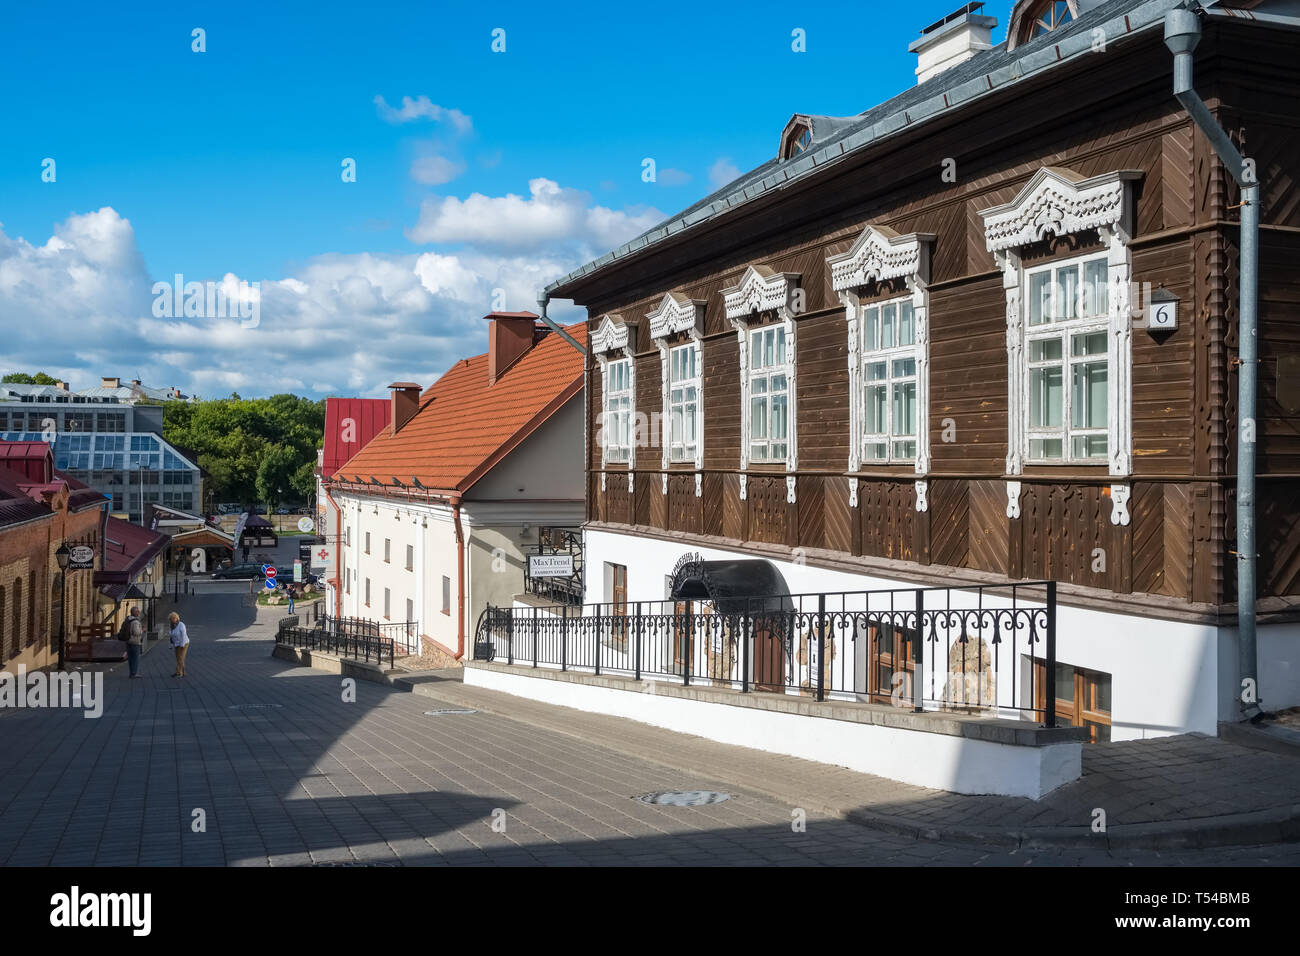 Minsk, Belarus - July 4, 2018: Old wooden house near the famous Zybickaja street in Upper Town in Minsk, Belarus Stock Photo